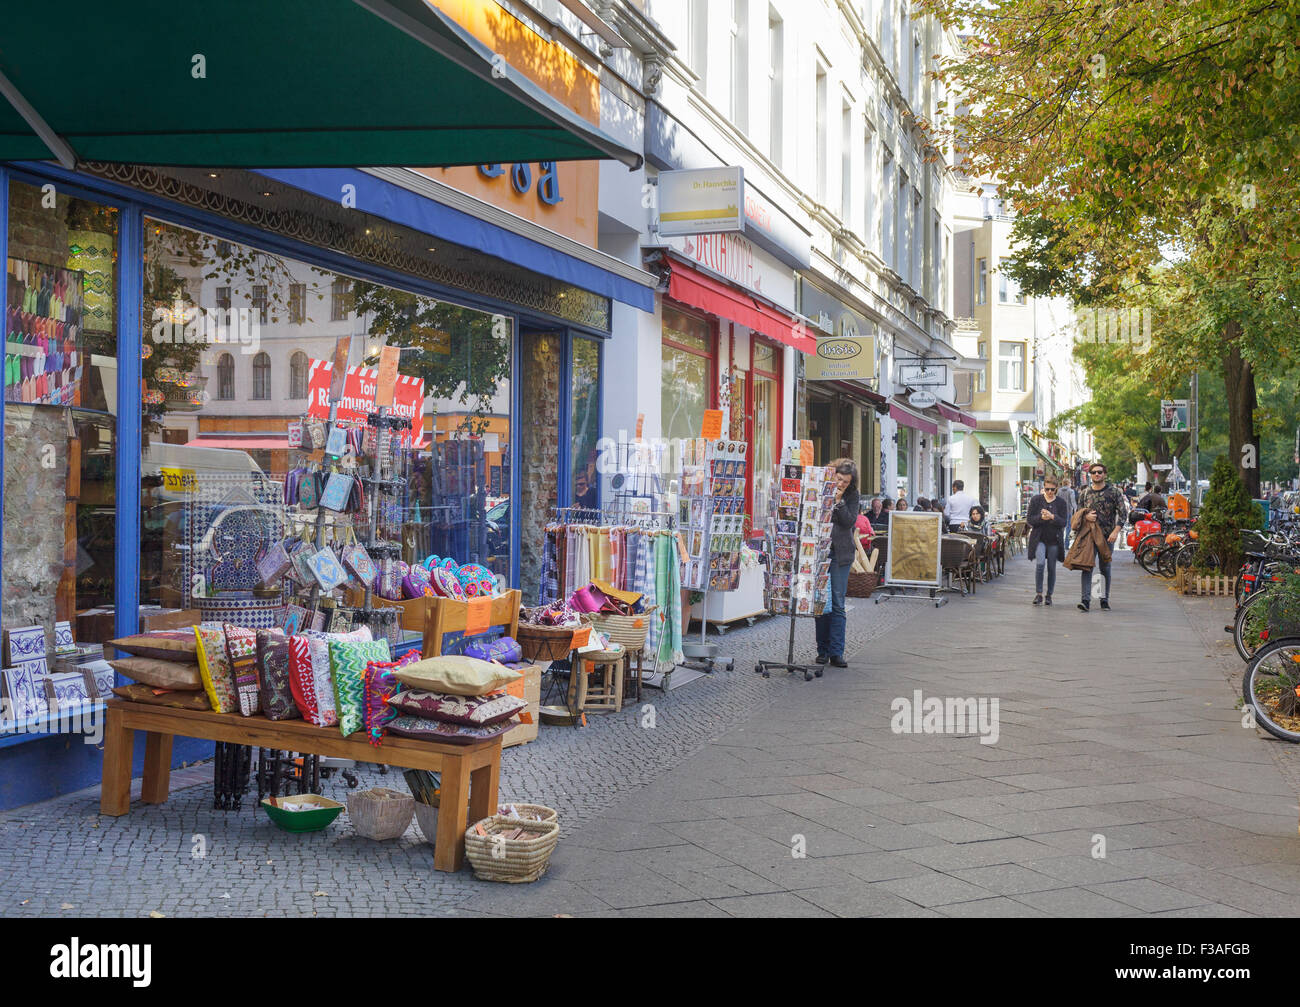 Colourful shops and restaurants on Bergmannstrasse in Kreuzberg, Berlin, Germany Stock Photo